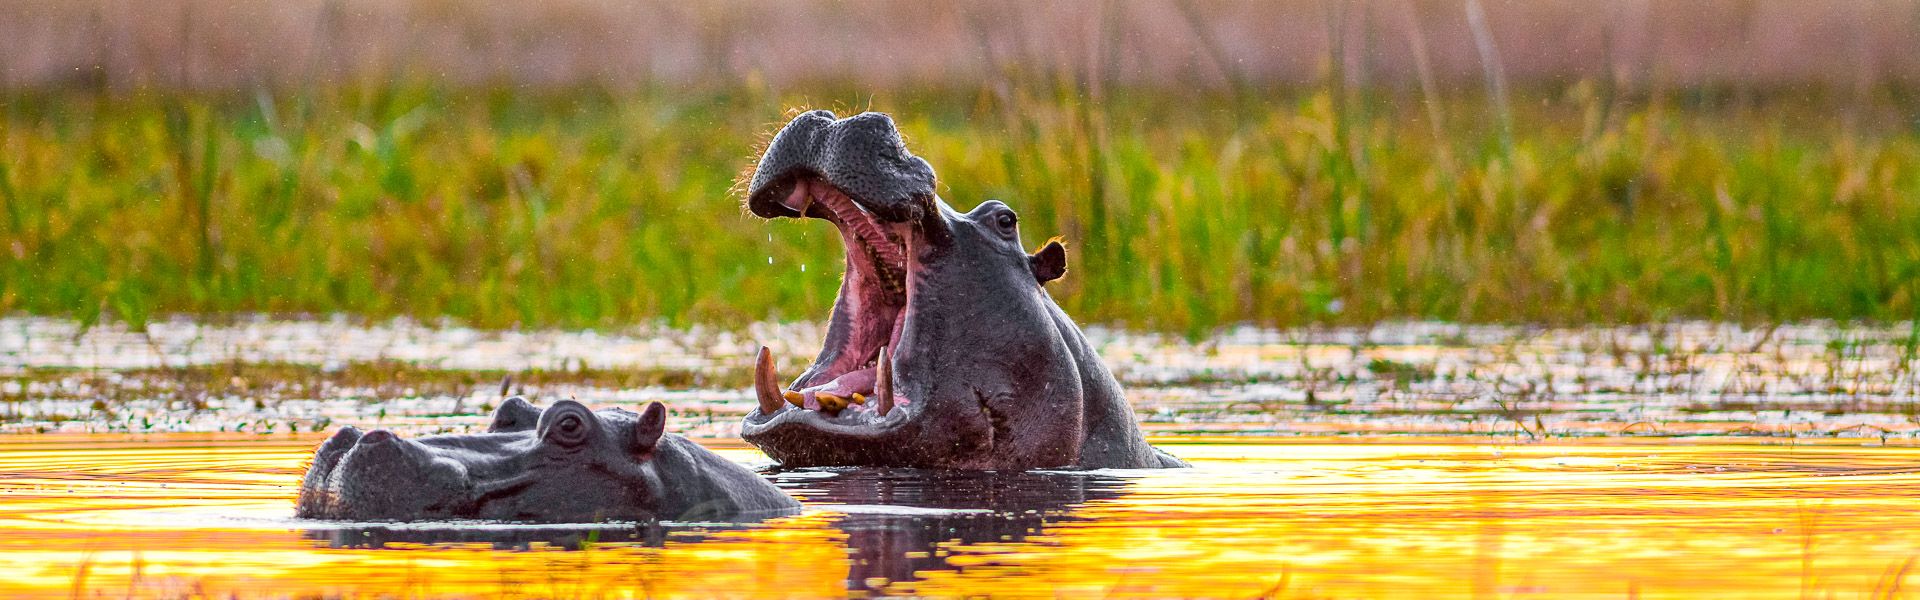 Zwei Hippos im Sonnenuntergang |  Rainer von Brandis, iStockphoto.com / Chamleon